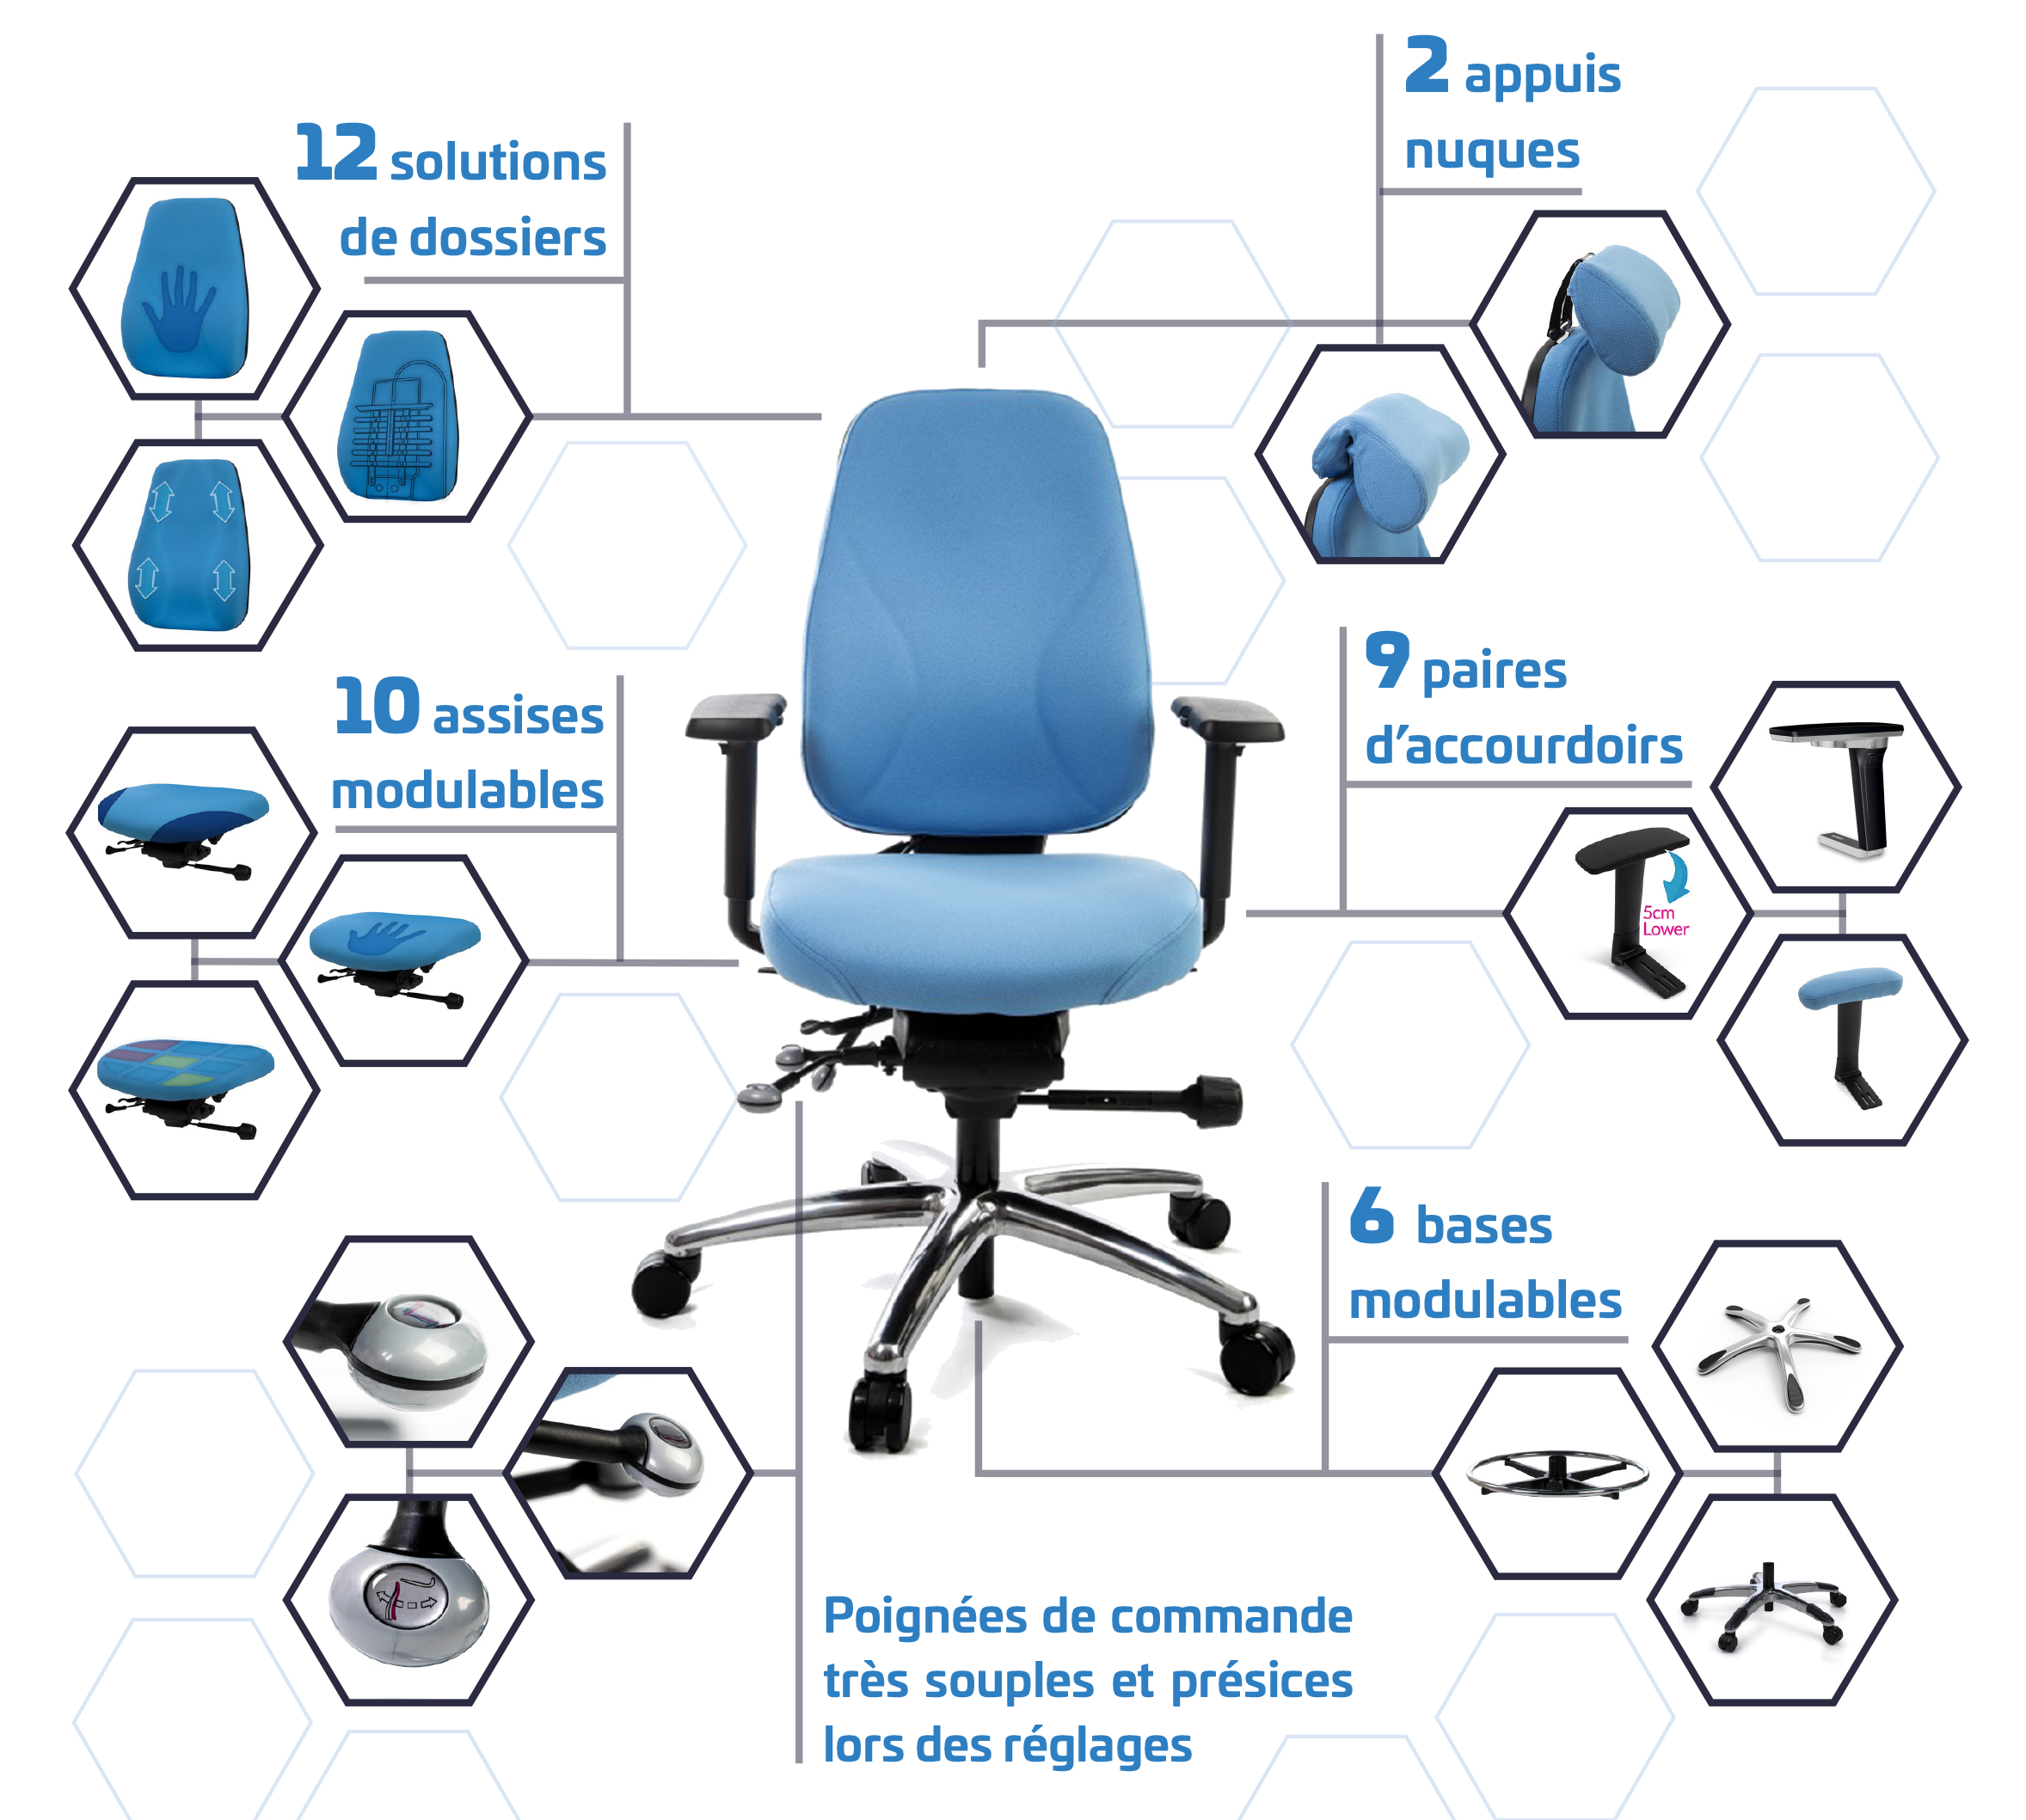 MÉDIK + I-medik - Trouvez le fauteuil ergonomique qui soulagera vos douleurs. Découvrez nos modèles conçus sur-mesure, adaptés à votre pathologie et environnement de travail.